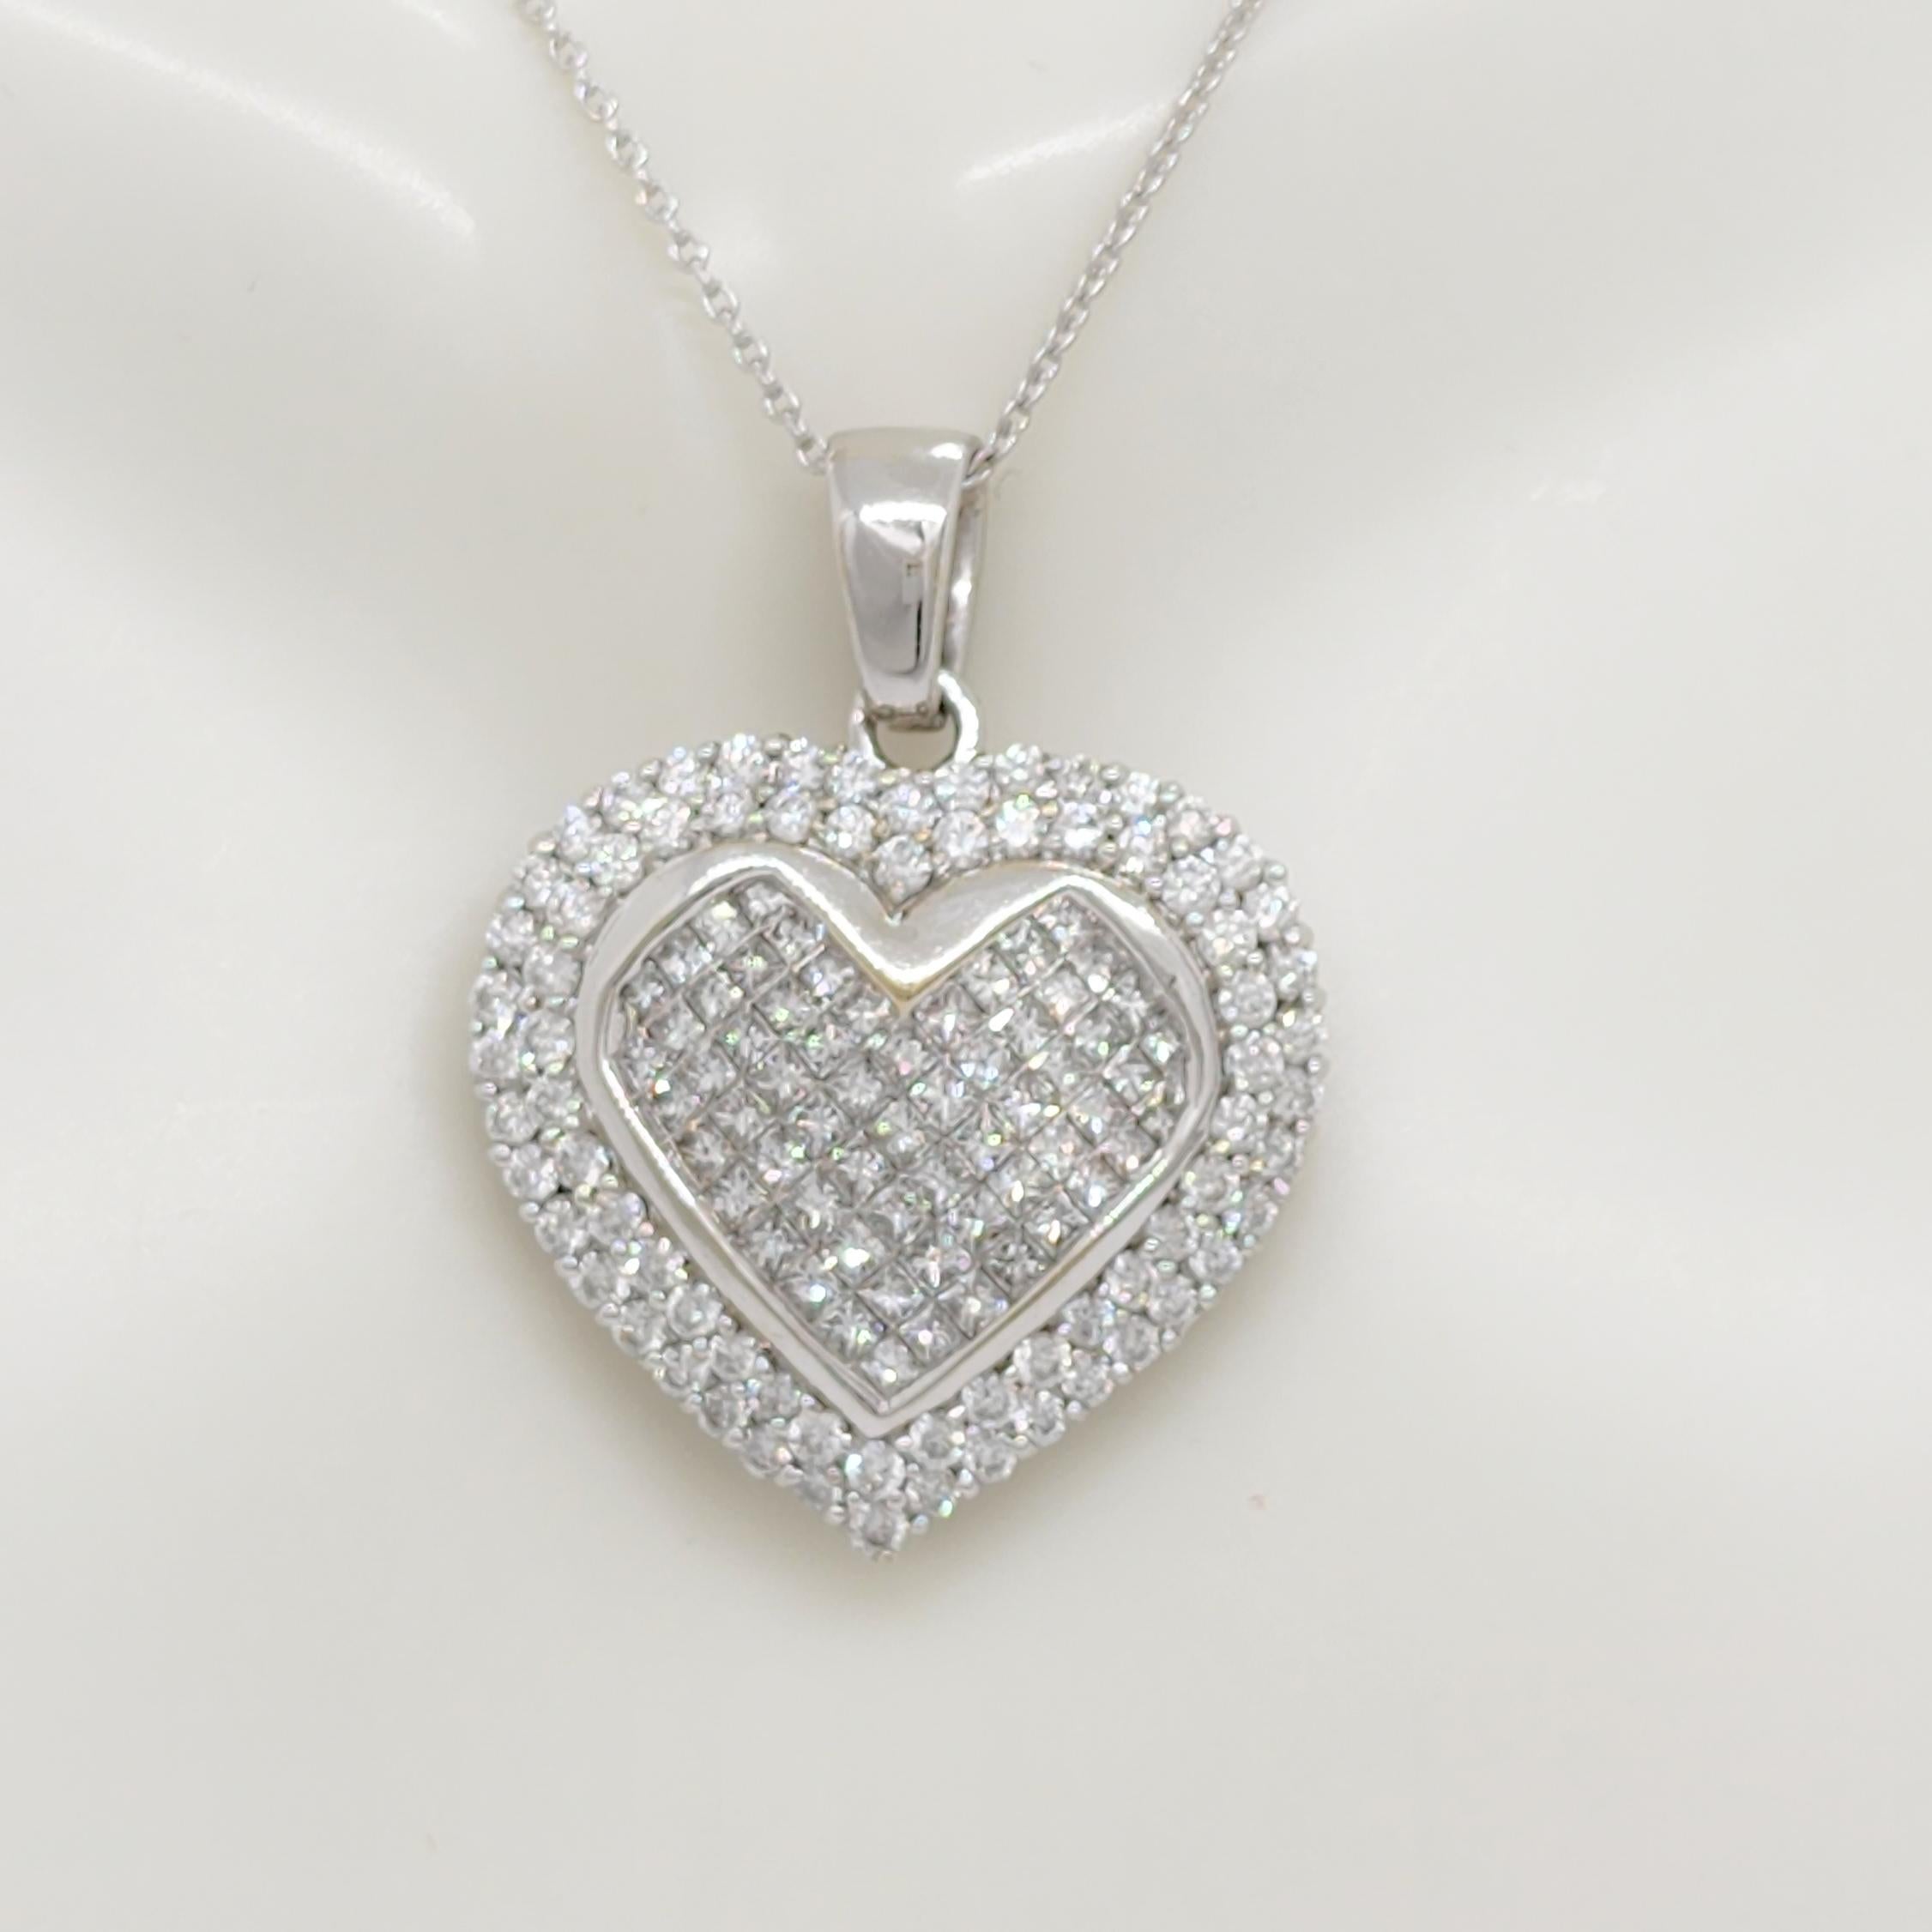 Magnifique pendentif avec 3,00 ct. de diamants blancs carrés et ronds de bonne qualité.  Fabriqué à la main en or blanc 14k.  La longueur est de 16